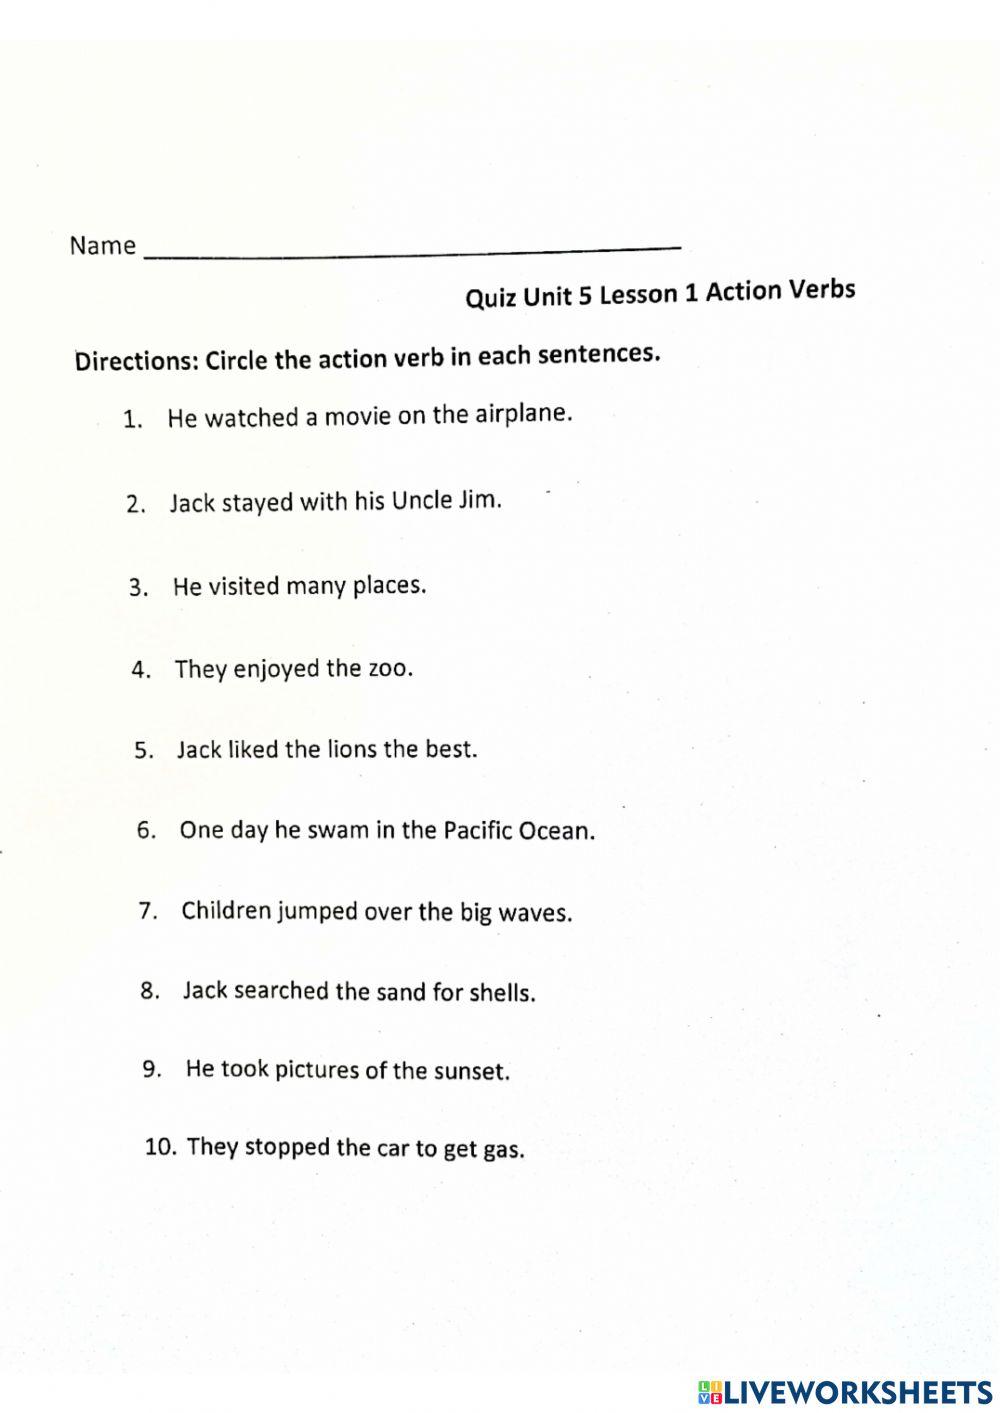 Unit 5 Lesson 1 Quiz Verbs